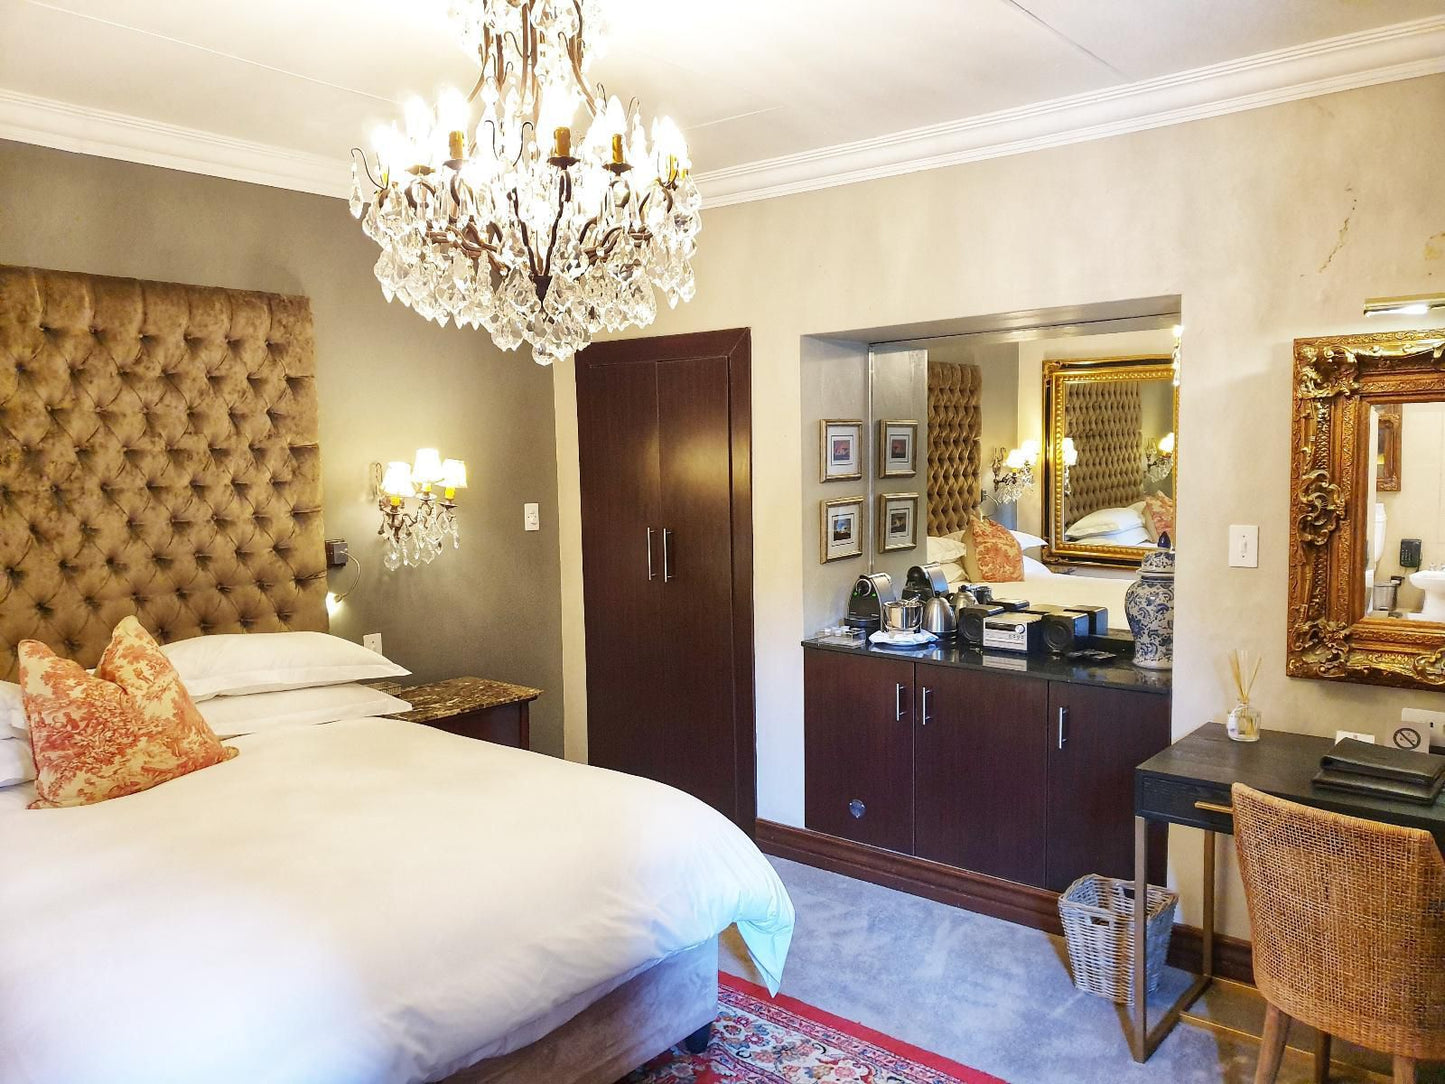 The Residence Houghton Johannesburg Gauteng South Africa Bedroom